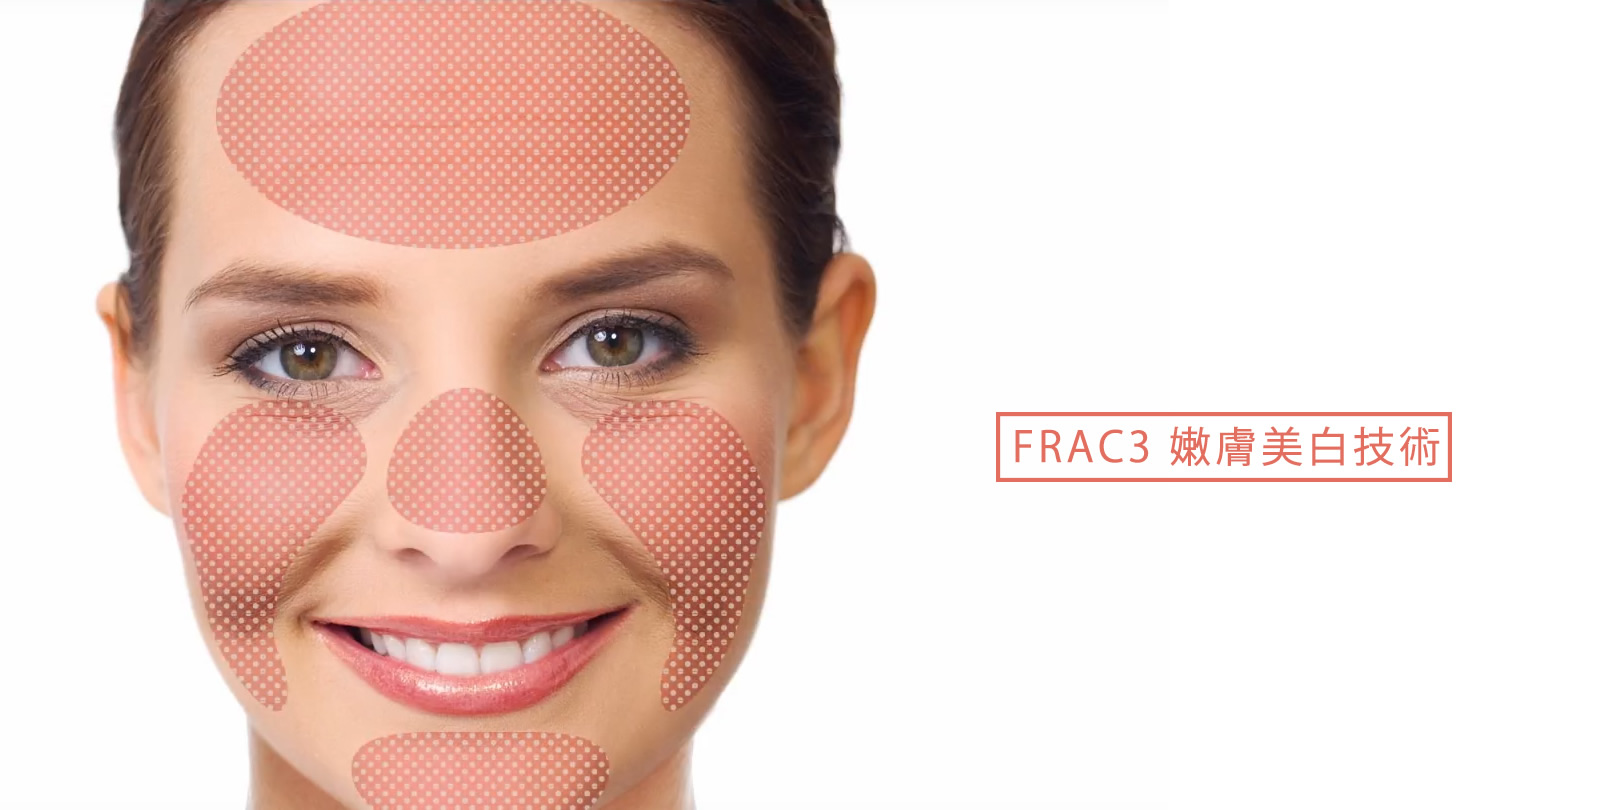 韓后醫美 4D口內拉提 FRAC3 嫩膚美白技術。